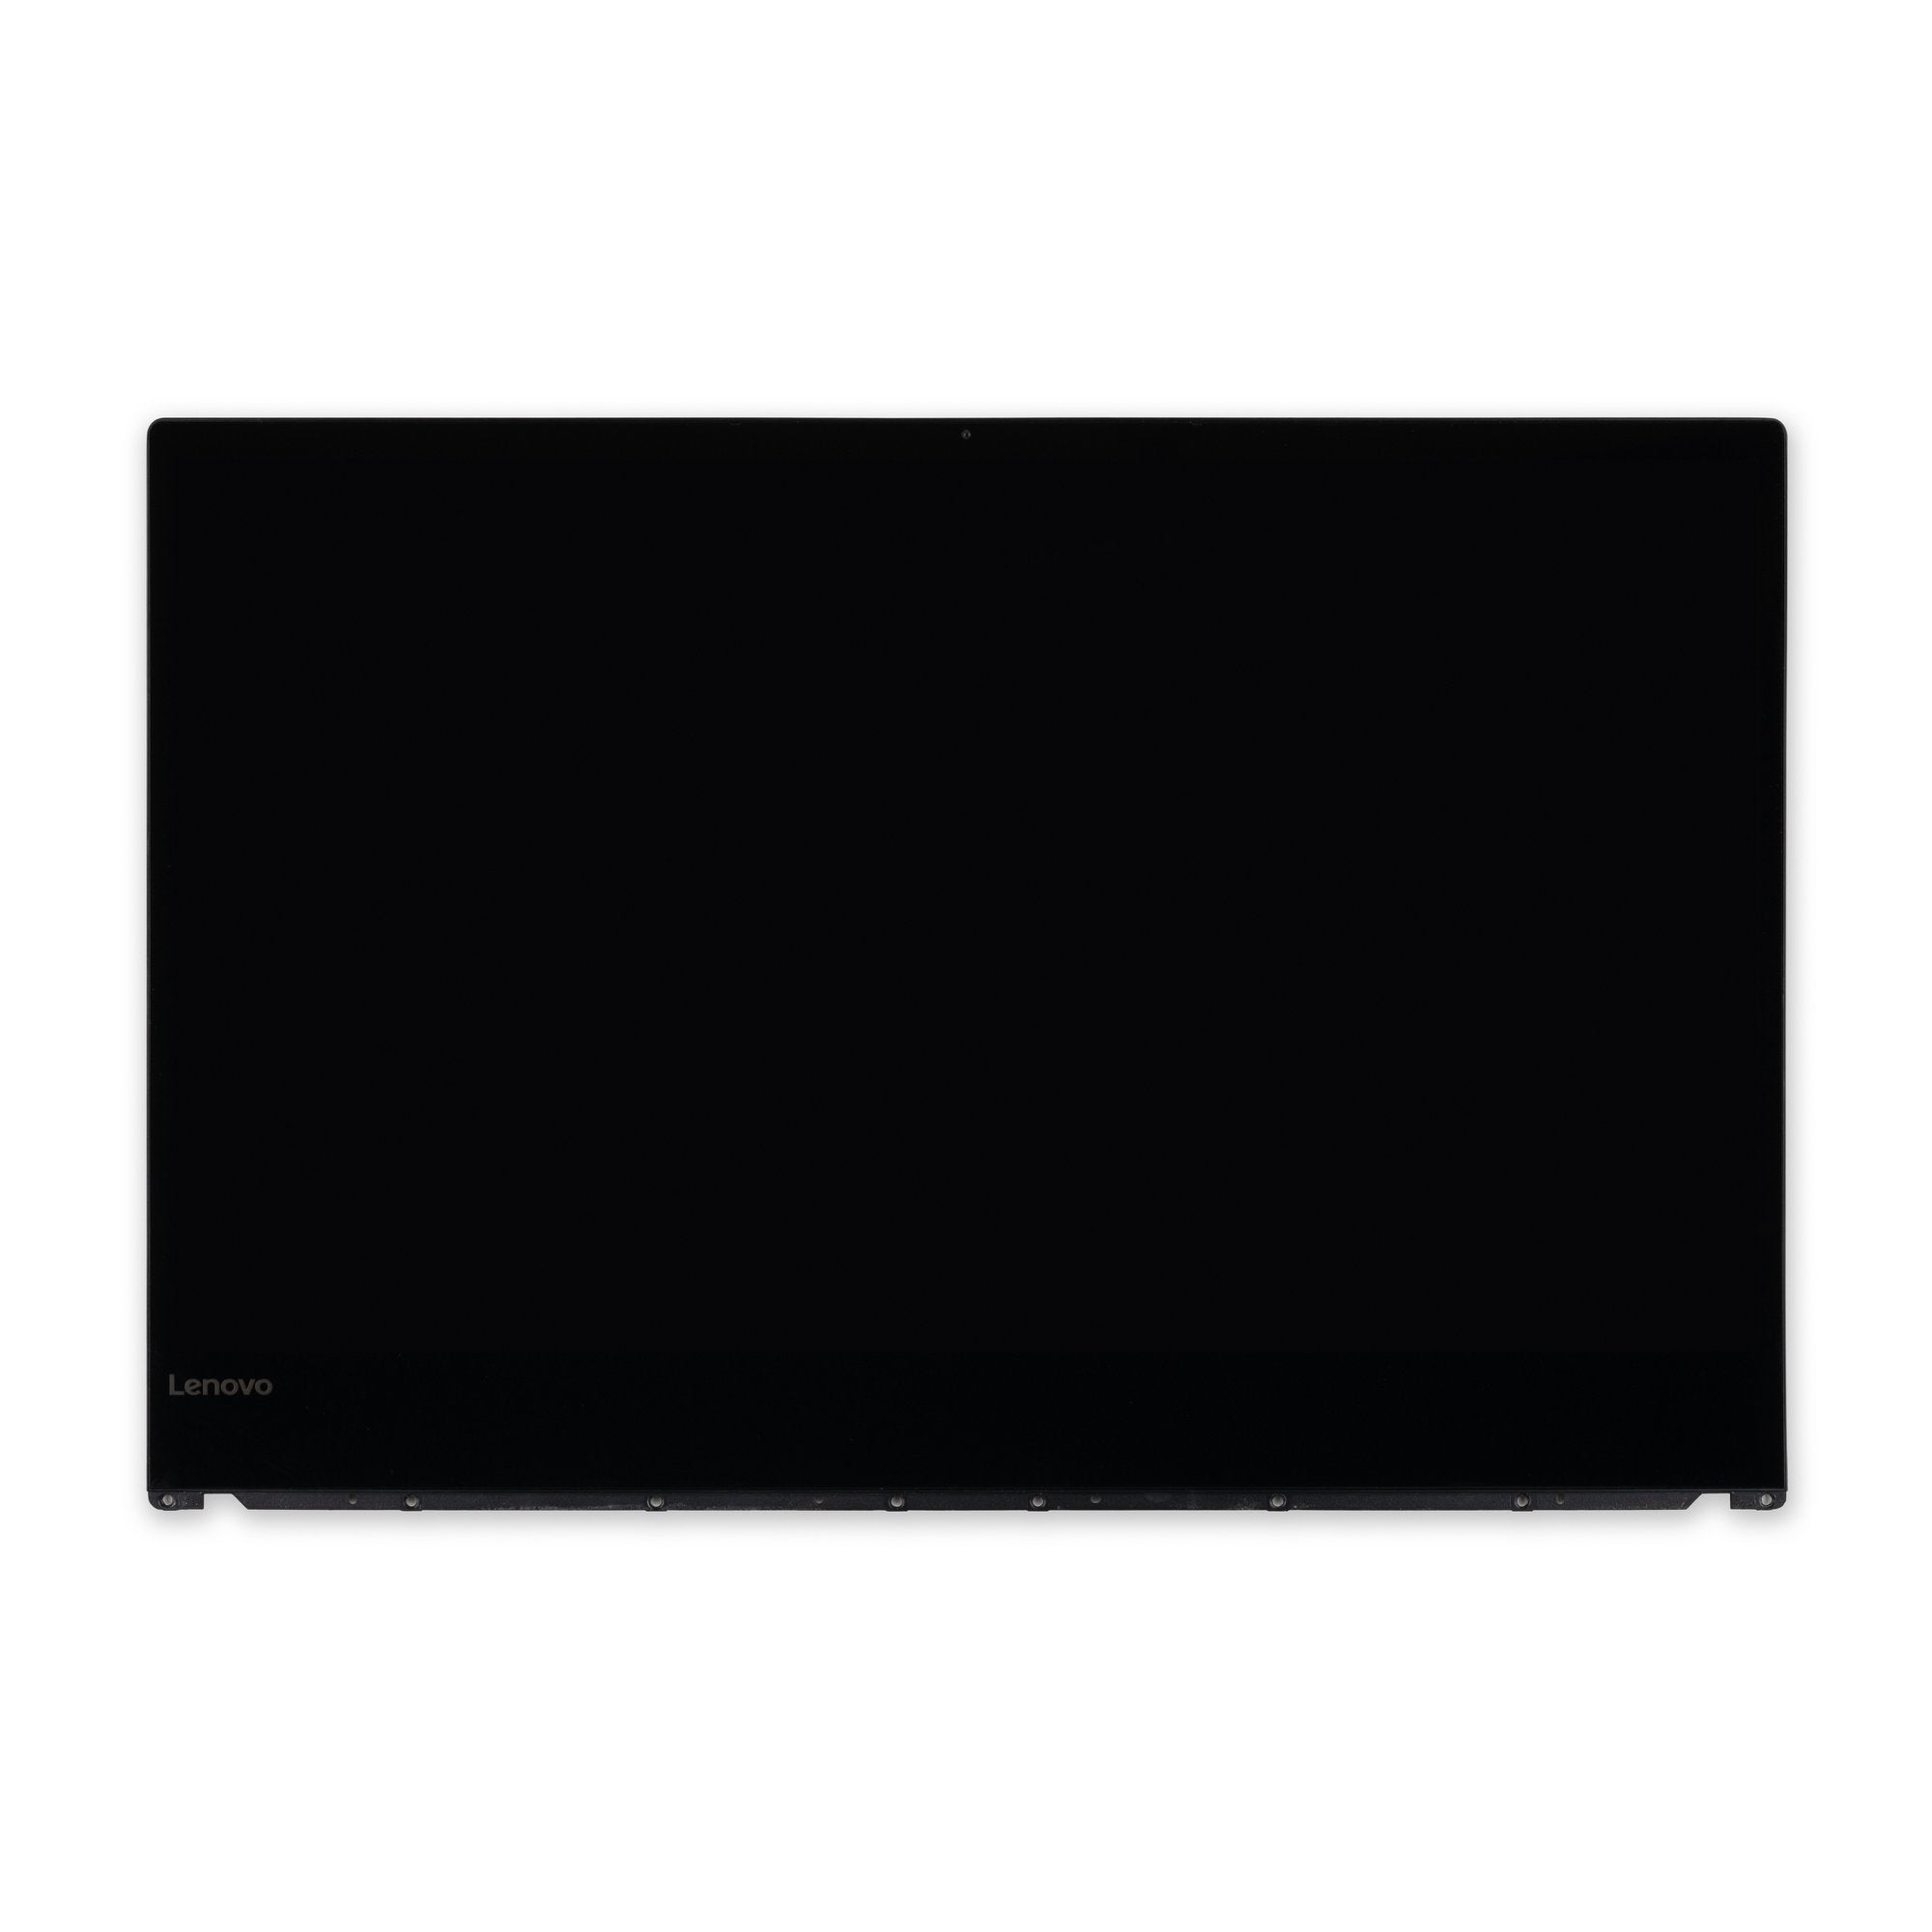 Lenovo Yoga 920-13 LCD Panel Used